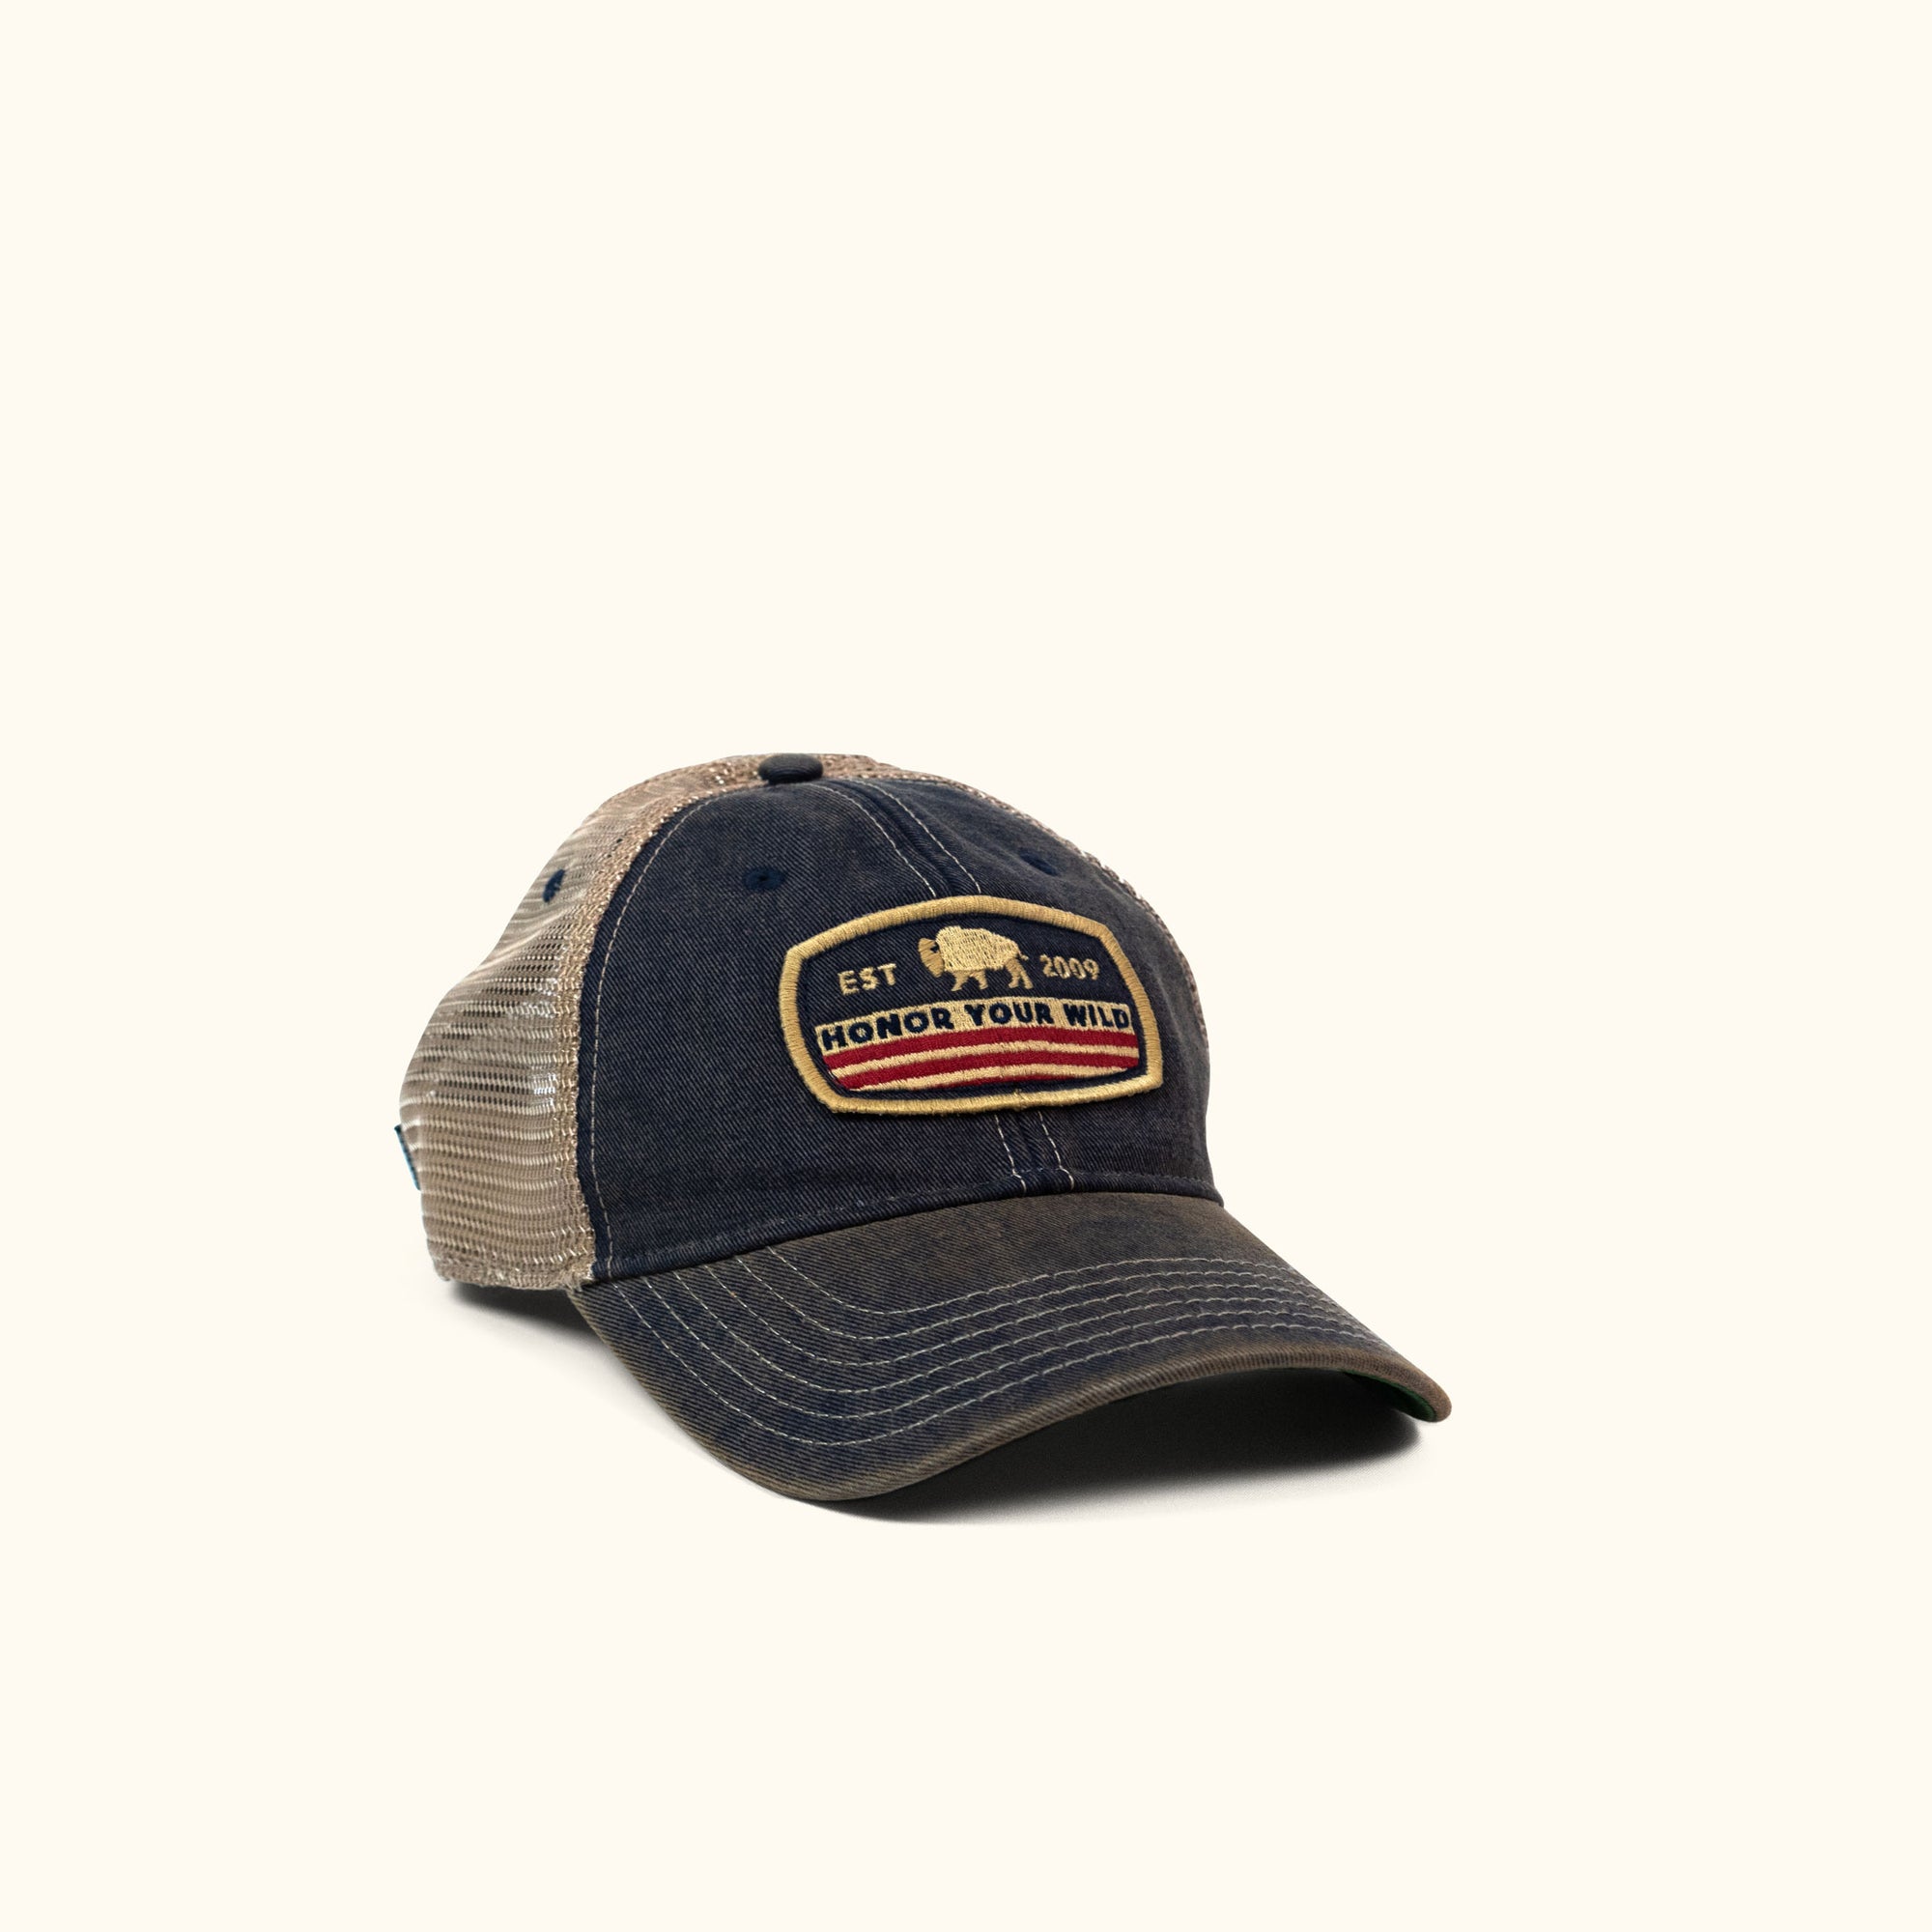 Honor Your Wild Trucker Hat | Navy